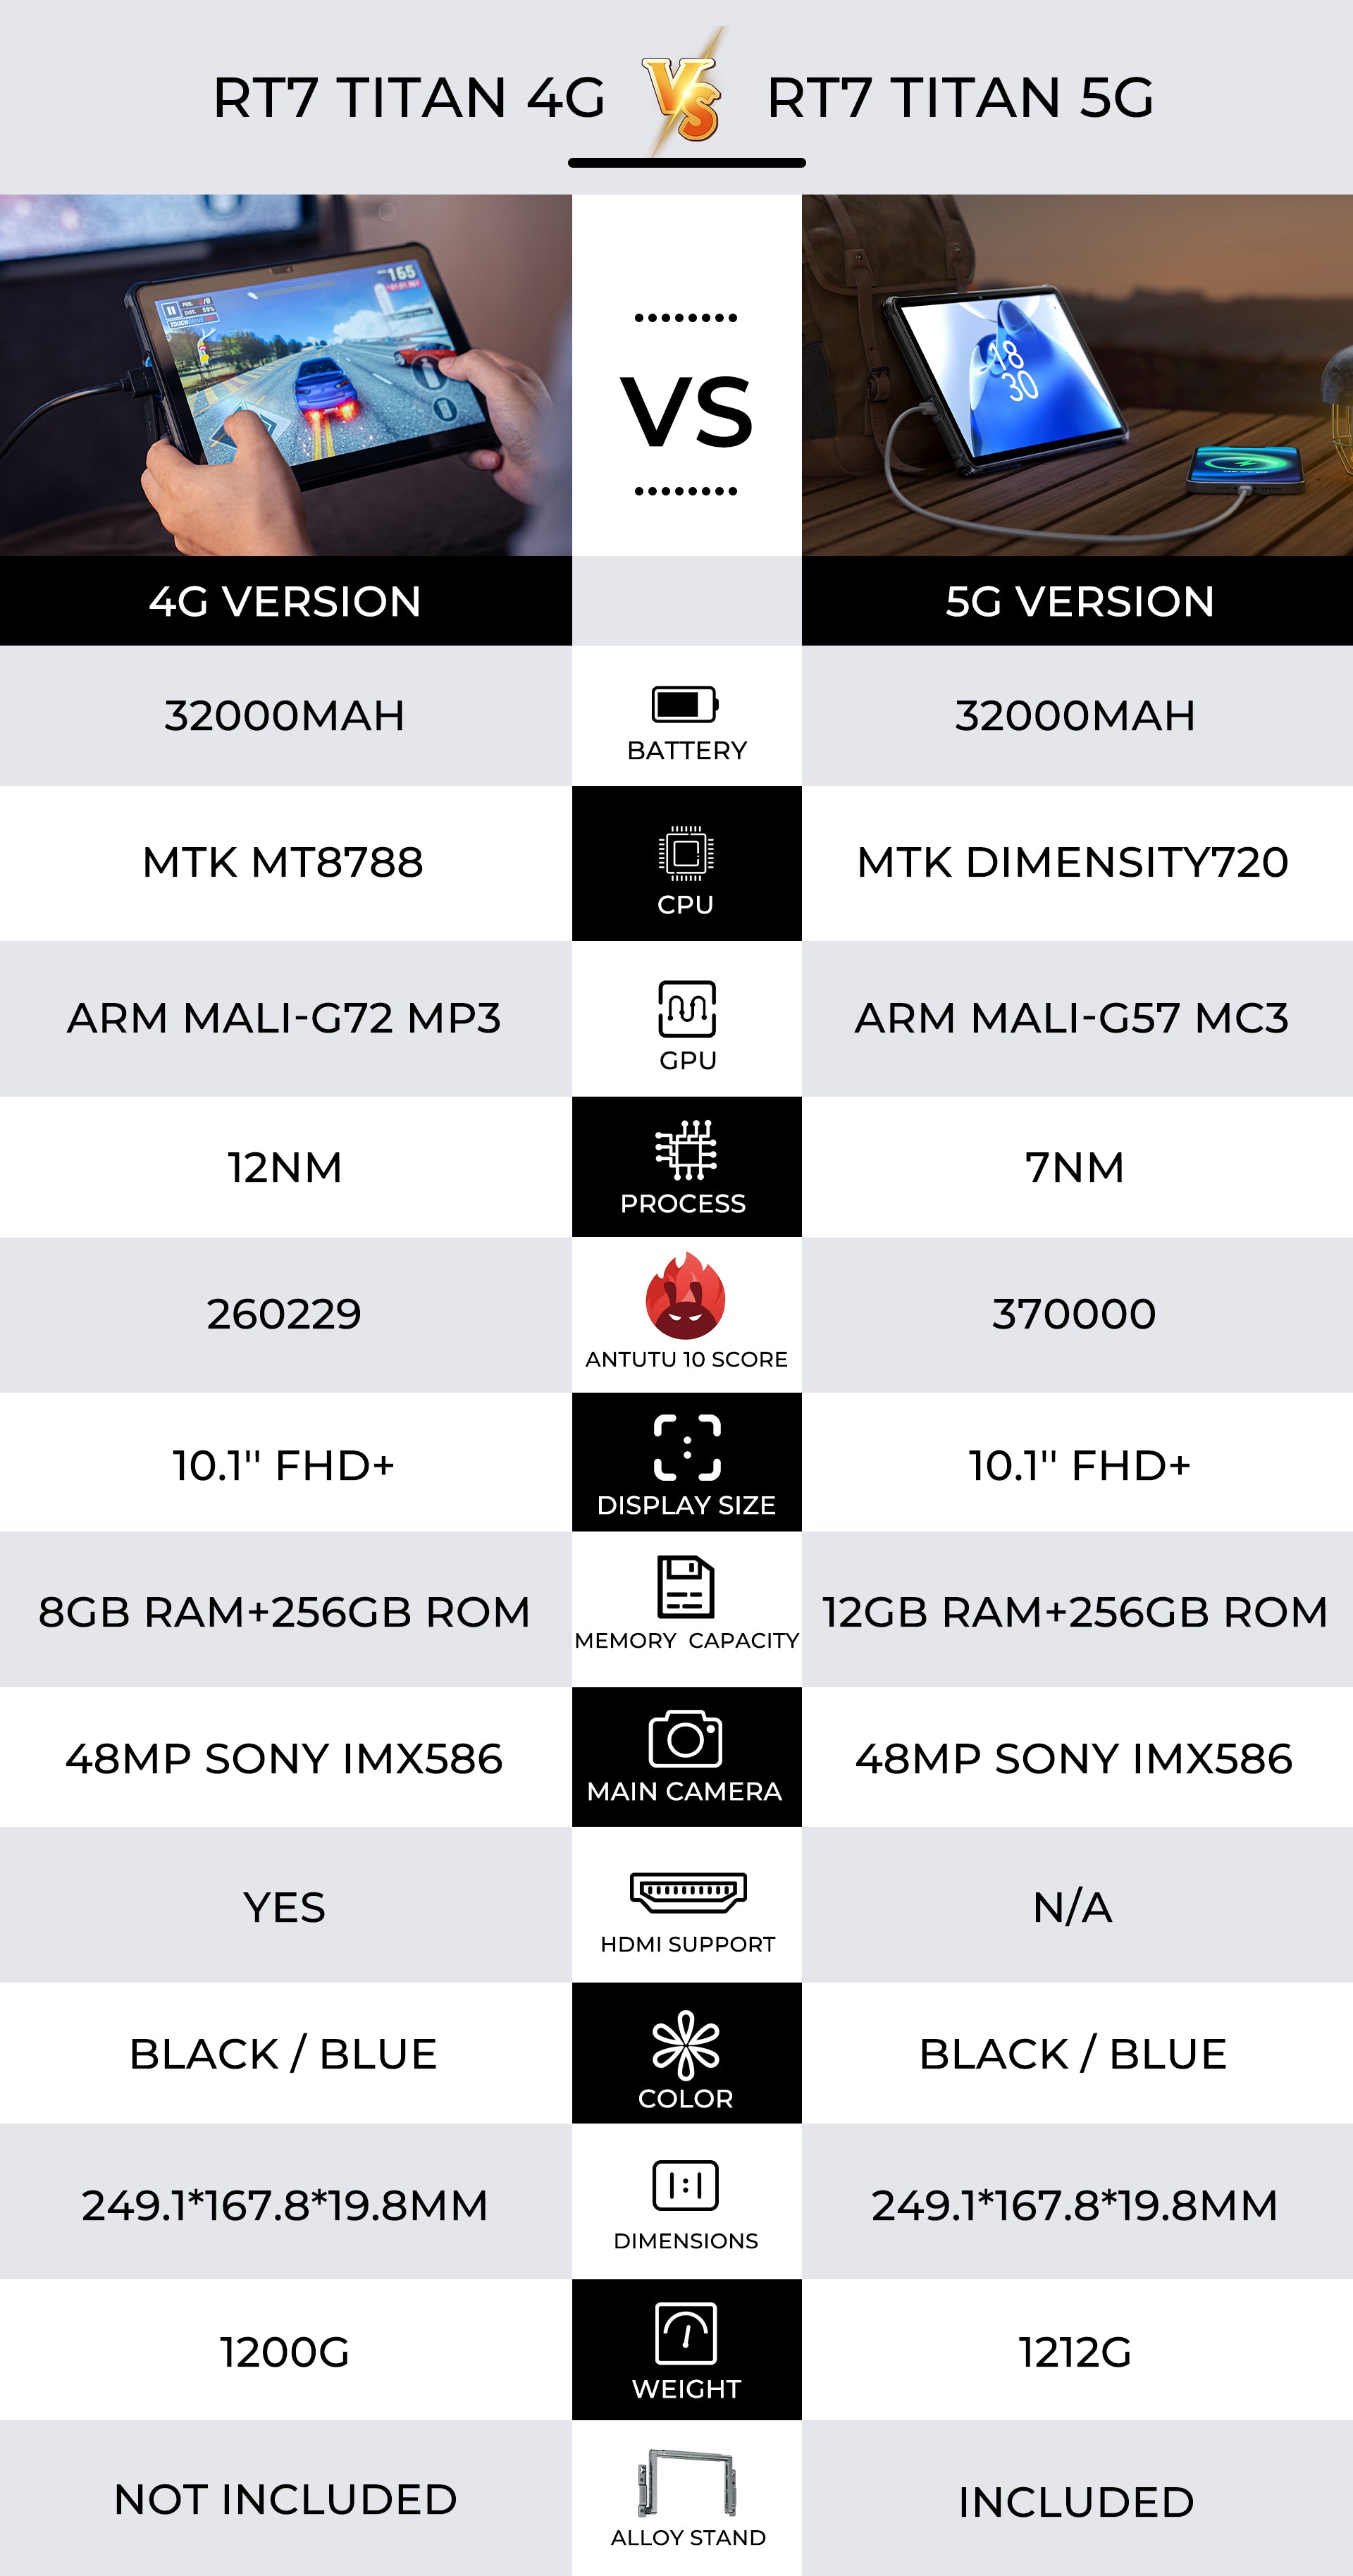 OUS AN-Tablette robuste 5G, Oukitel RT7, 32000mAh, 12 Go de RAM, 256 Go,  Dean Dimrespondable 720, caméra de vision nocturne 48MP + 20MP, première  mondiale